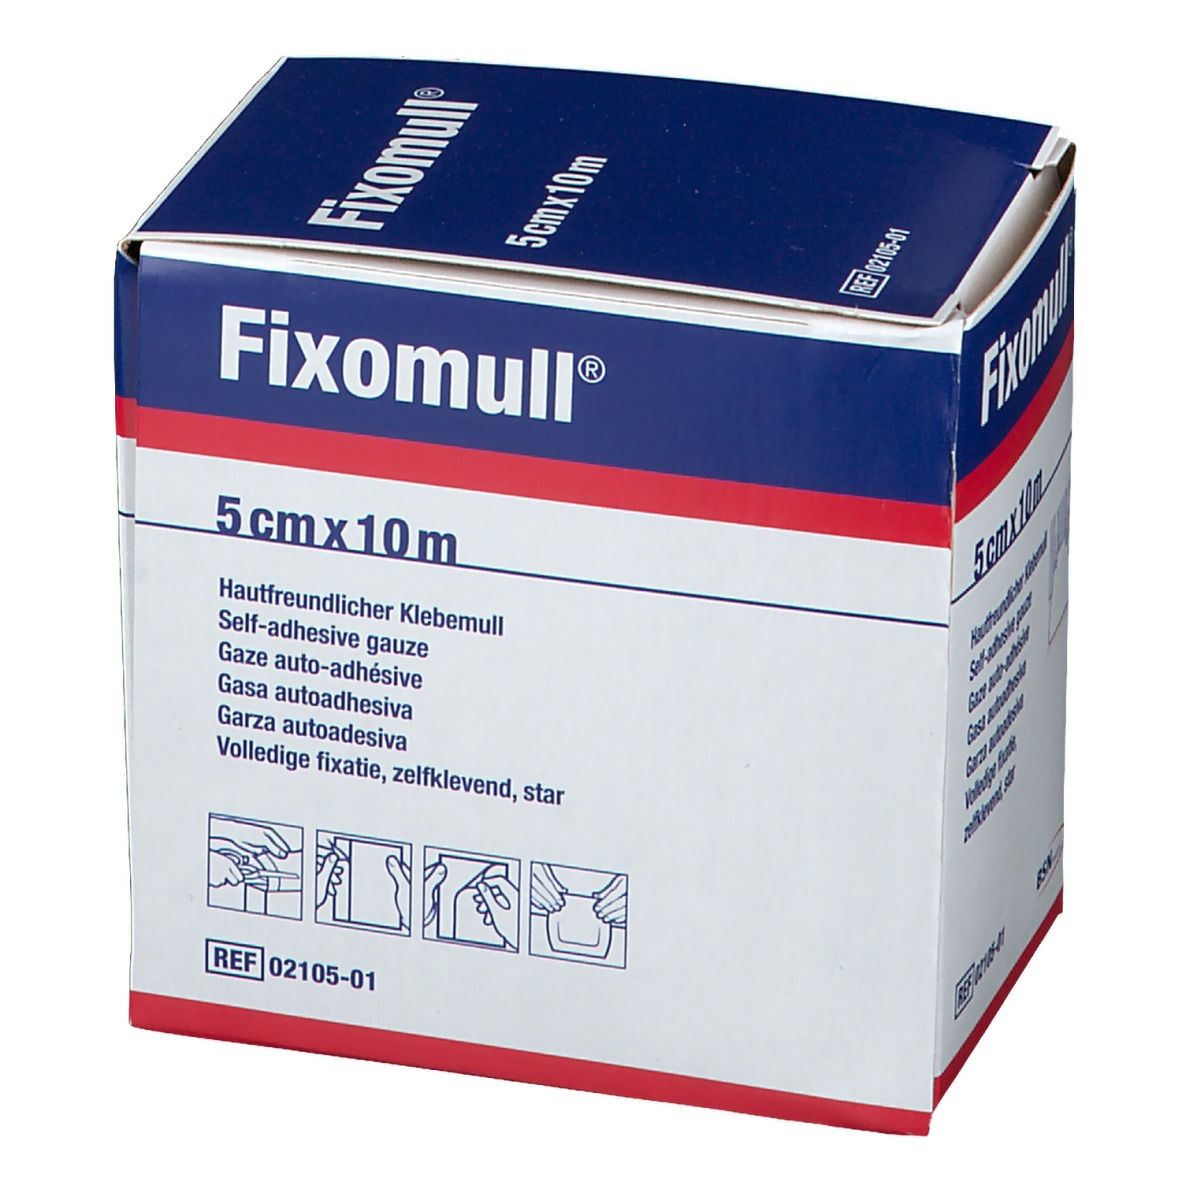 Fixomull® 5 cm x 10 m